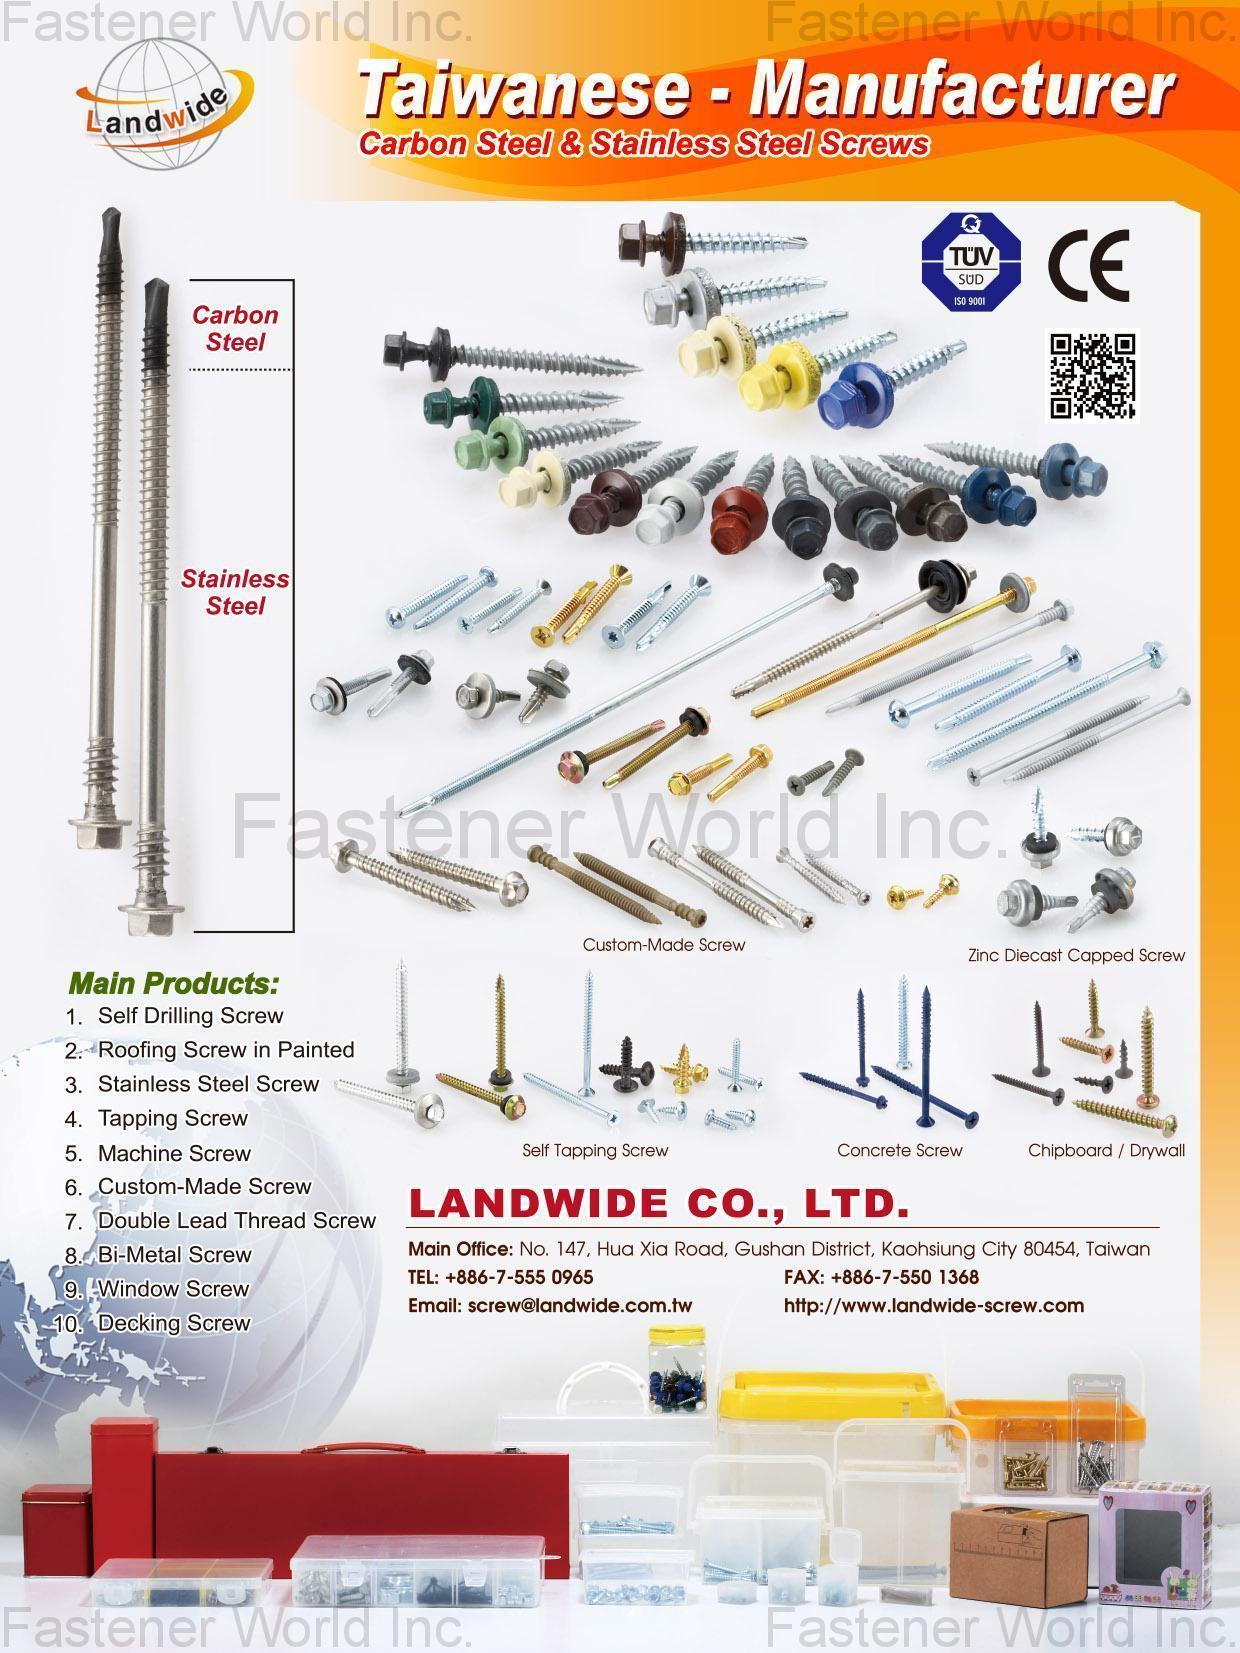 LANDWIDE CO., LTD.  , Self Drilling Screws, Stainless Steel Screw, Tapping Screws, Machine Screws, Custom-Made Screws, Double Lead Thread Screws, Bi-Metal Screws, Window Screws, Decking Screws